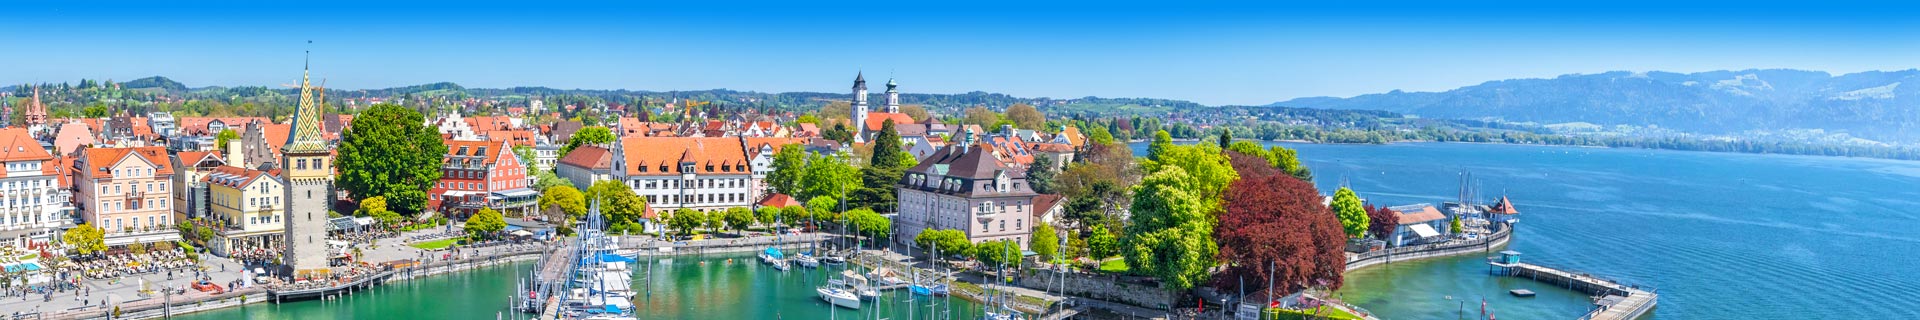 Prachtig uitzicht op een stad, haven en bergen in Duitsland